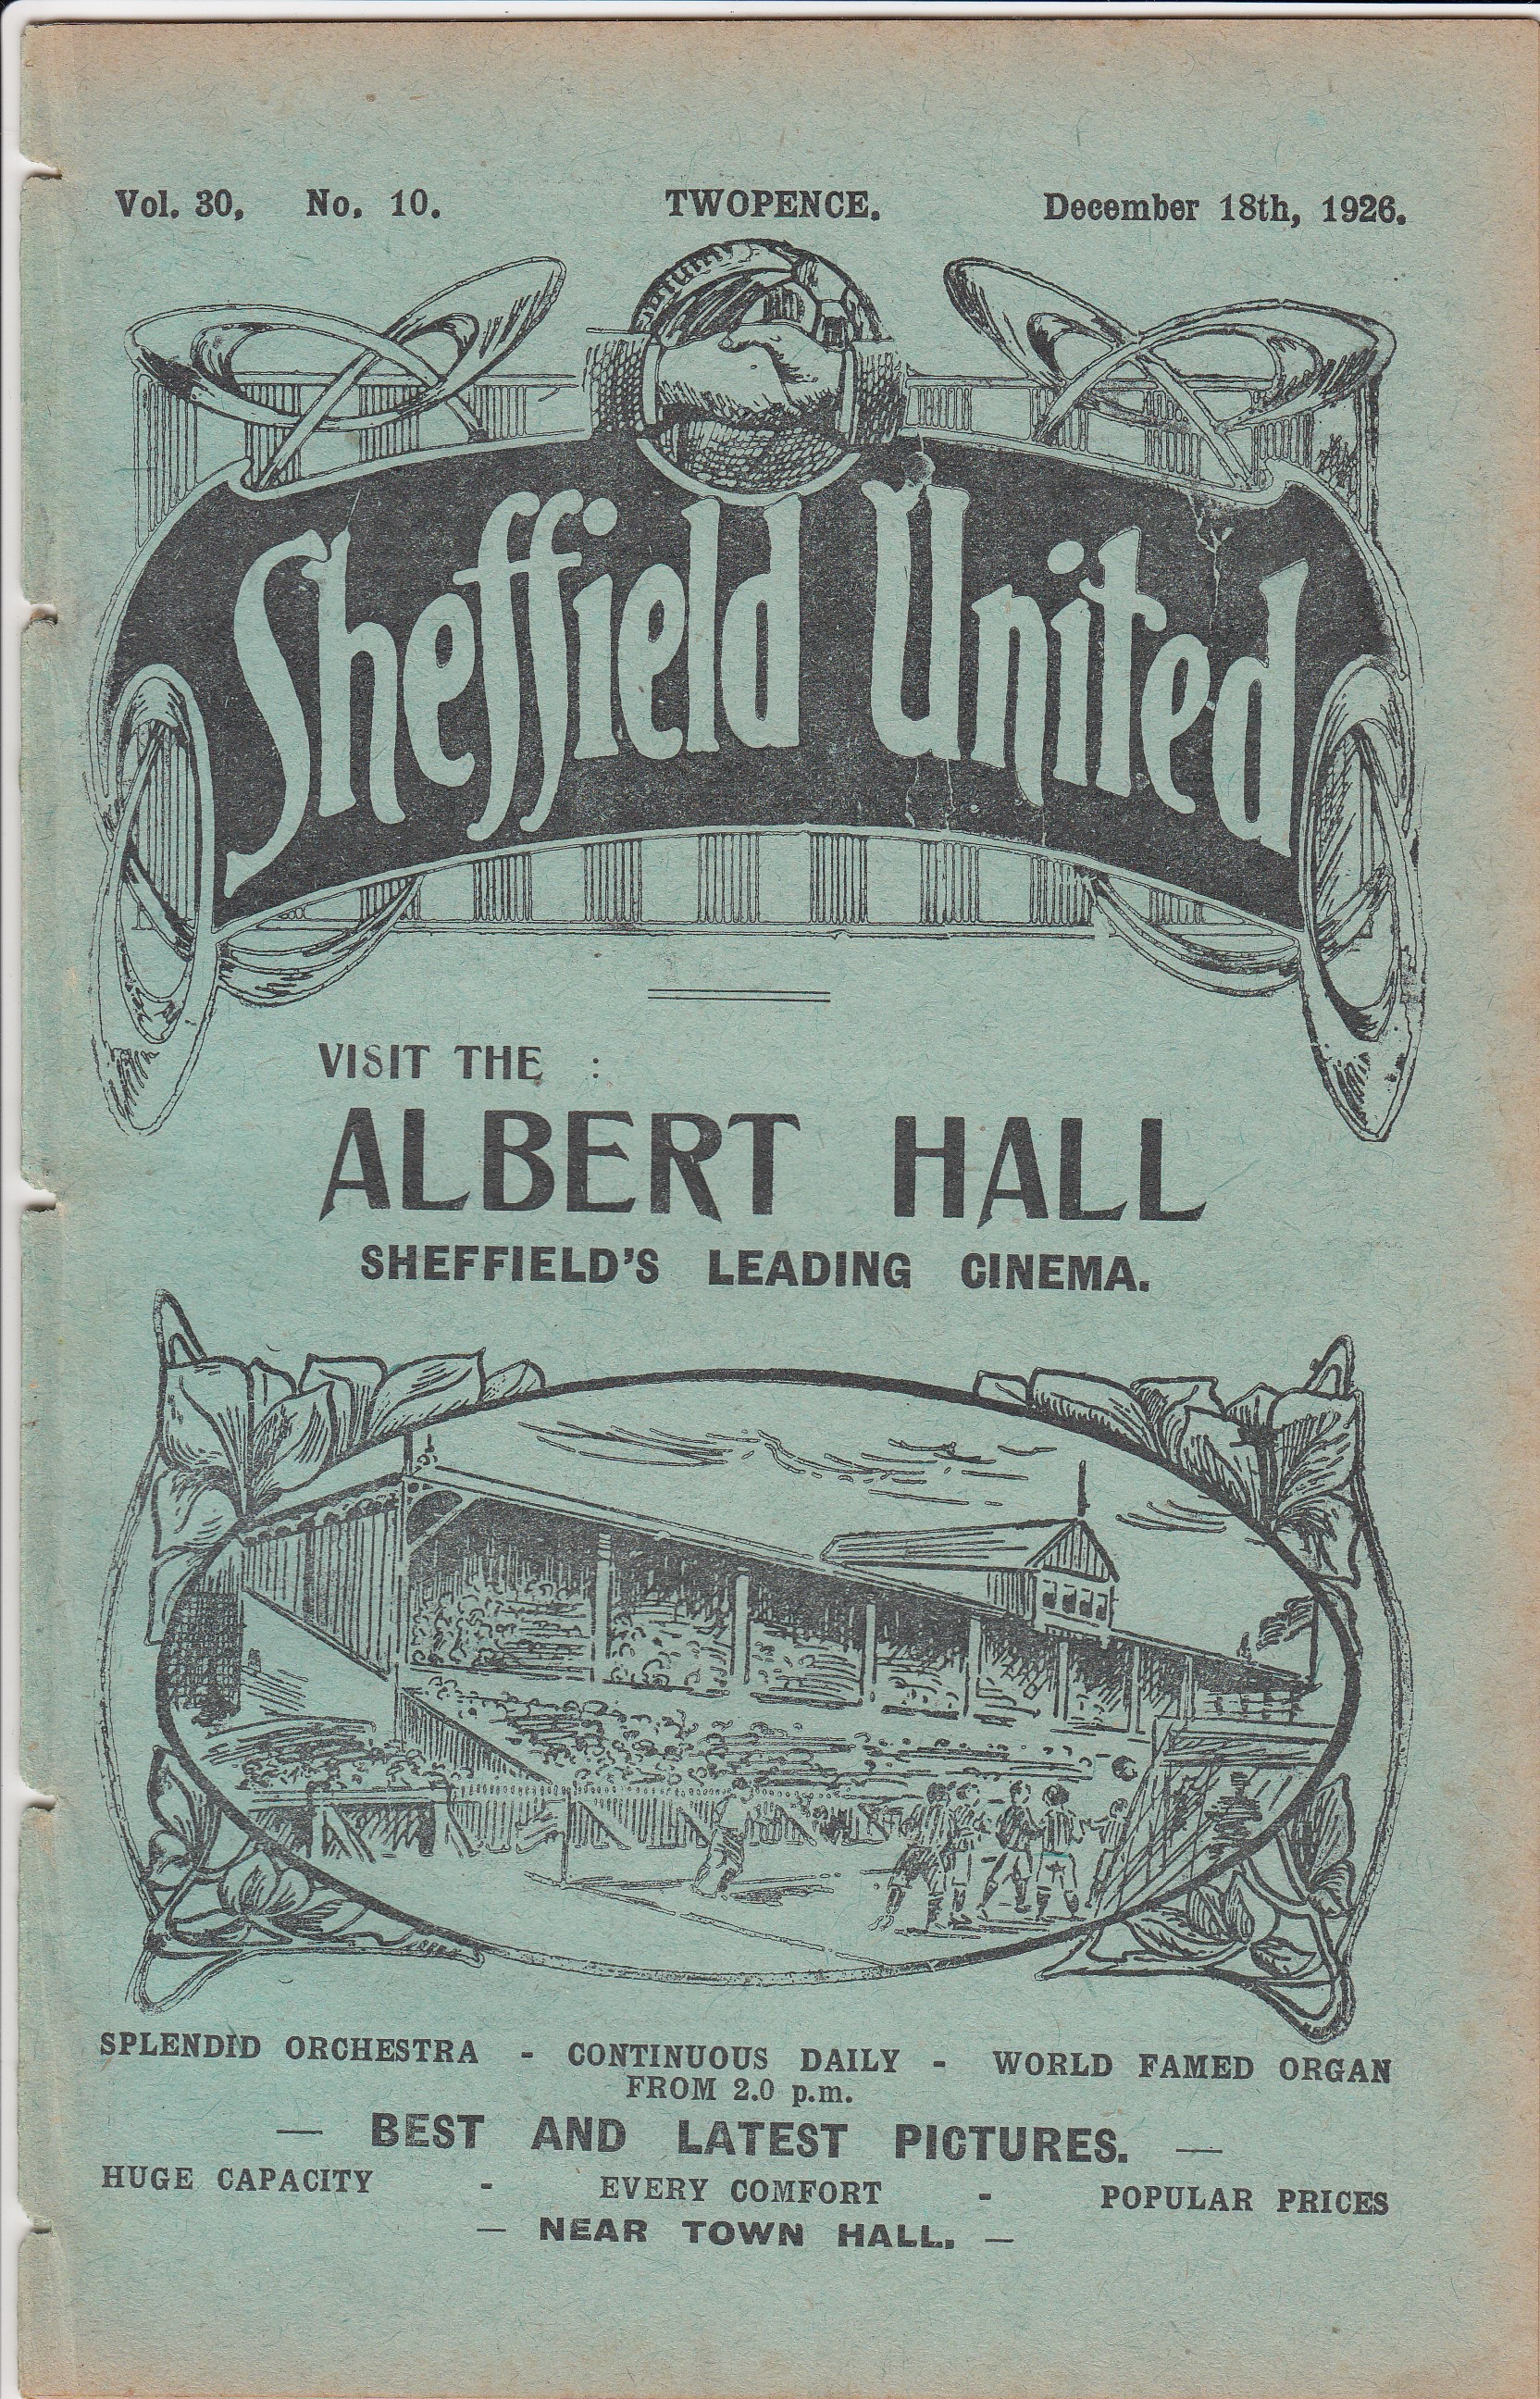 SHEF UTD - BIRMINGHAM 1926 Shef Utd home programme v Birmingham, 18/12/1926, Sheffield United won